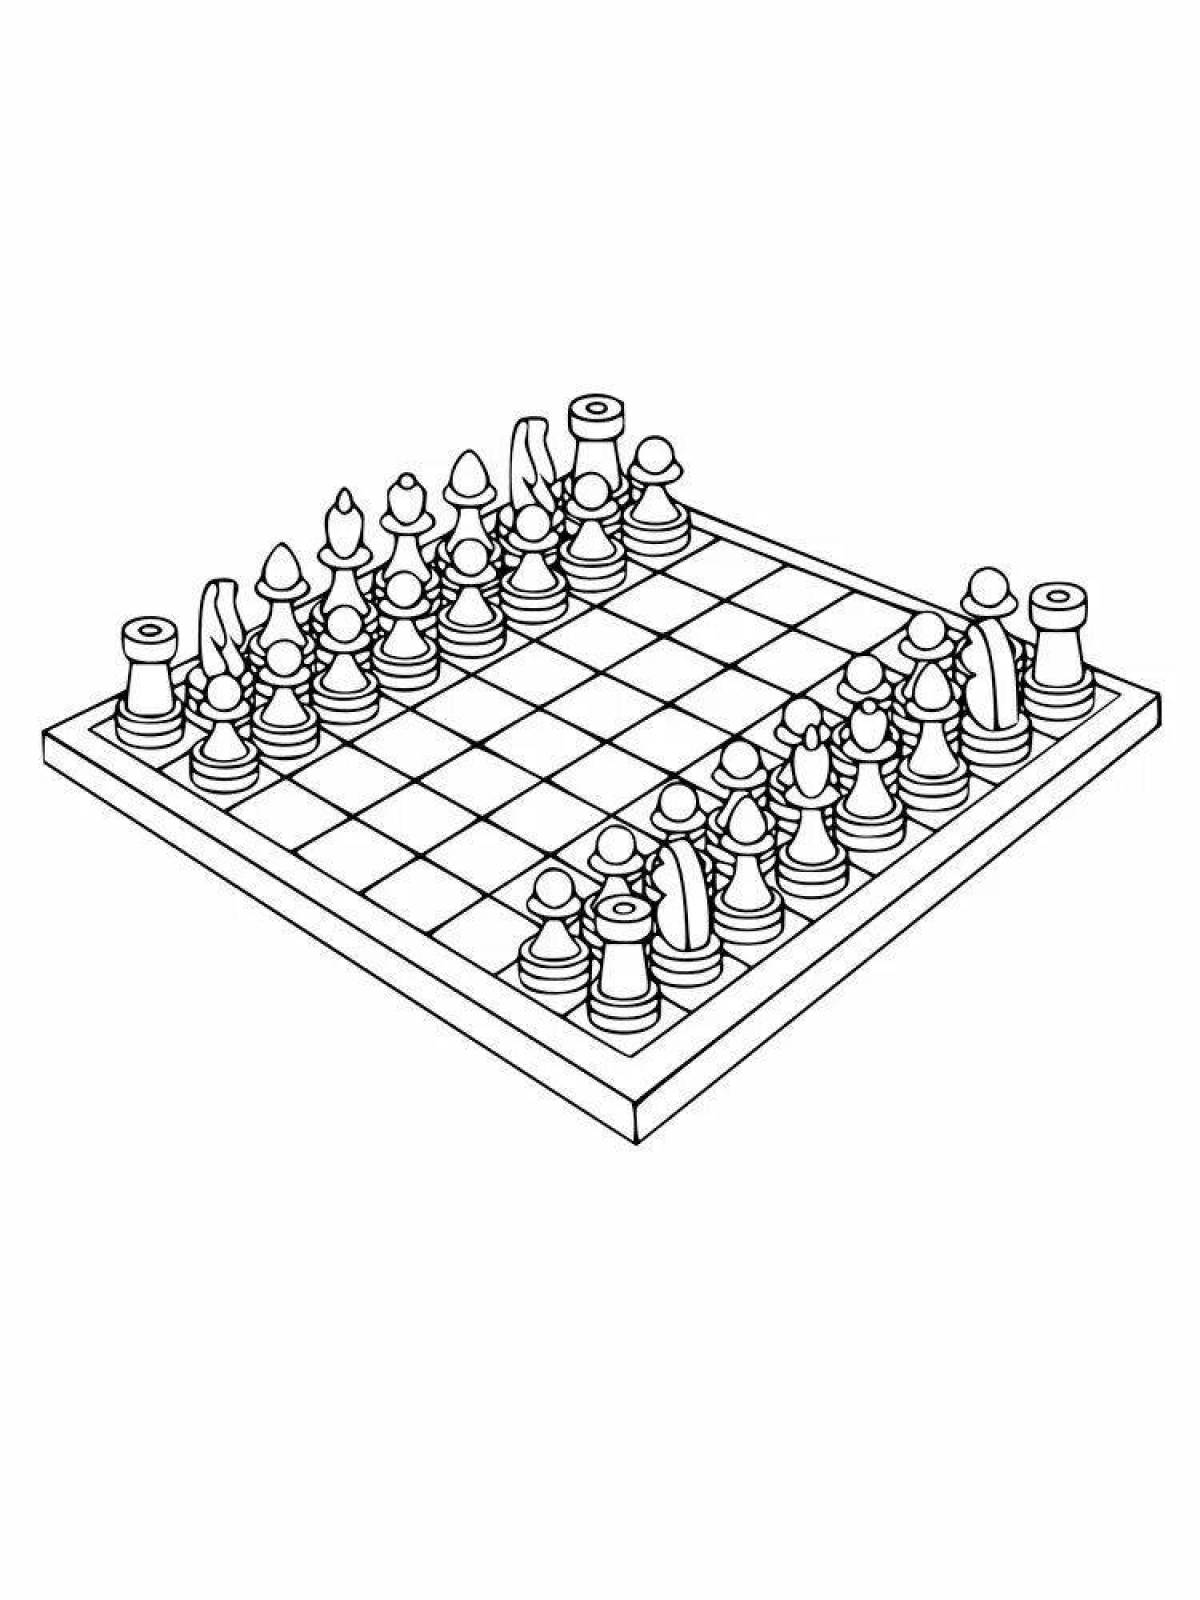 Children's chessboard #22